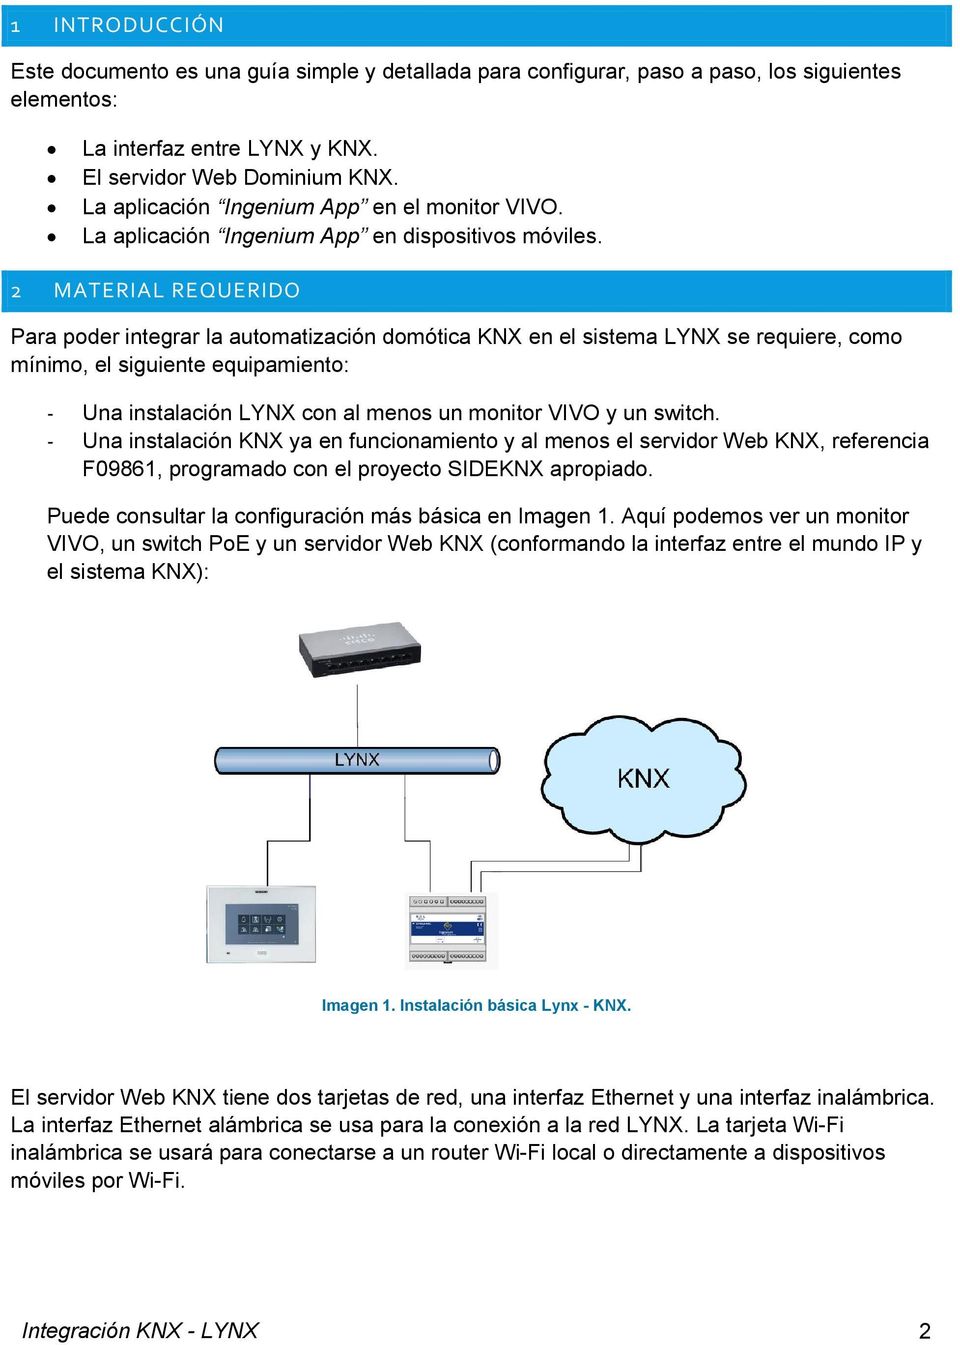 2 MATERIAL REQUERIDO Para poder integrar la automatización domótica KNX en el sistema LYNX se requiere, como mínimo, el siguiente equipamiento: - Una instalación LYNX con al menos un monitor VIVO y